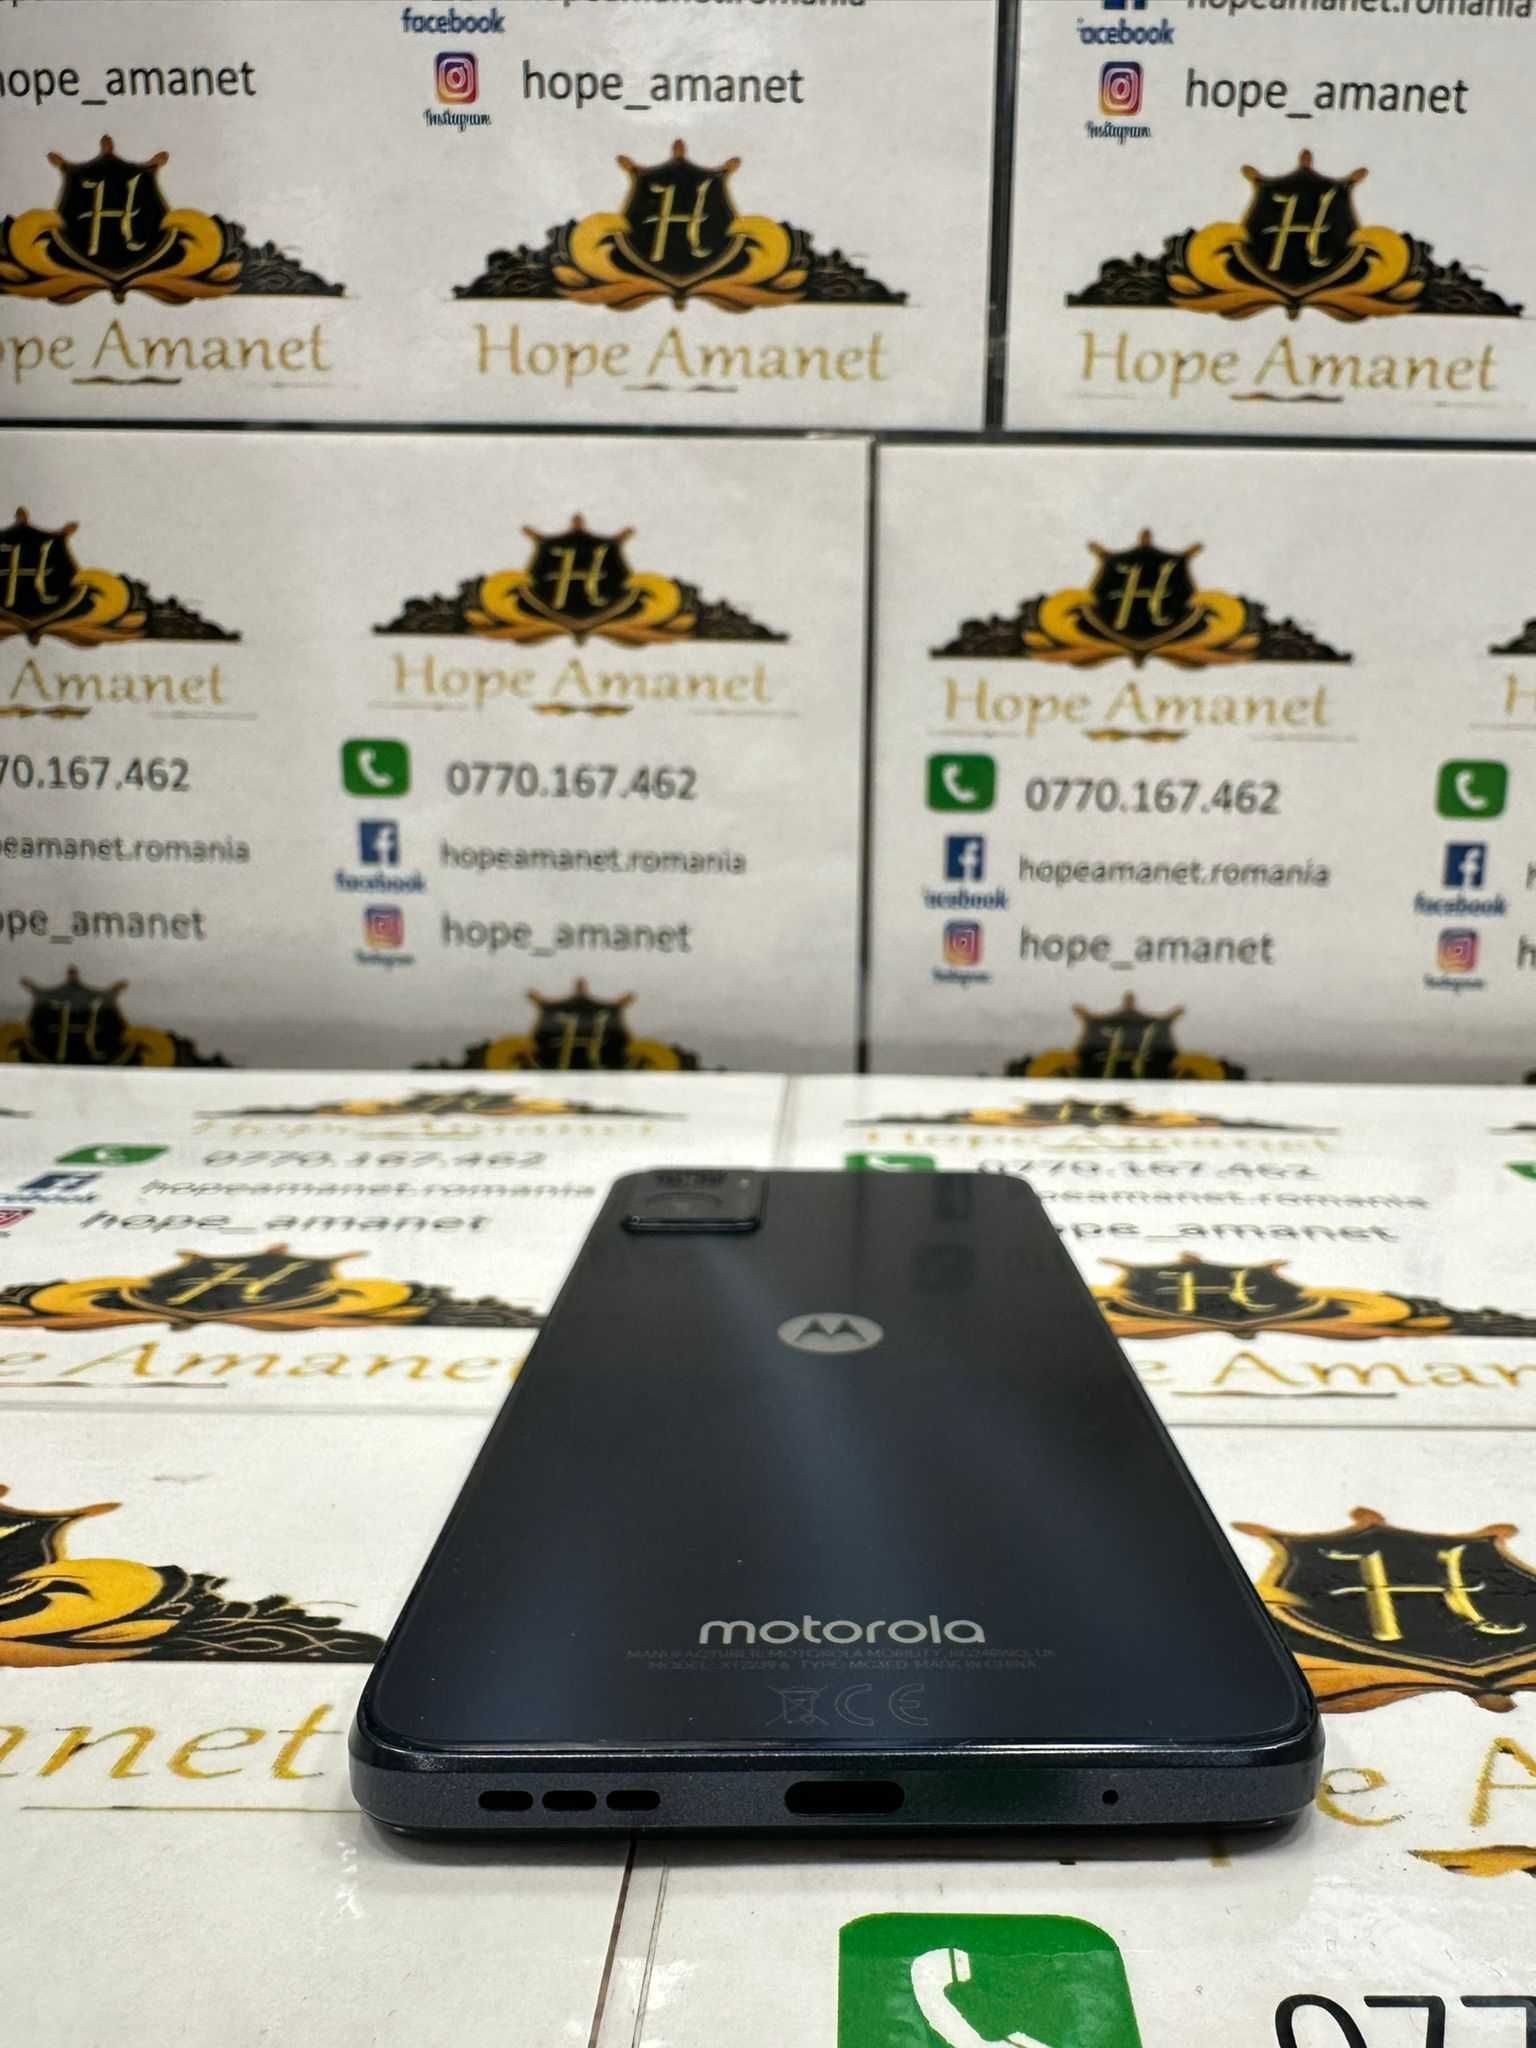 HOPE AMANET P12 - Motorola E22 / 64 - 4 GB / Astro Black